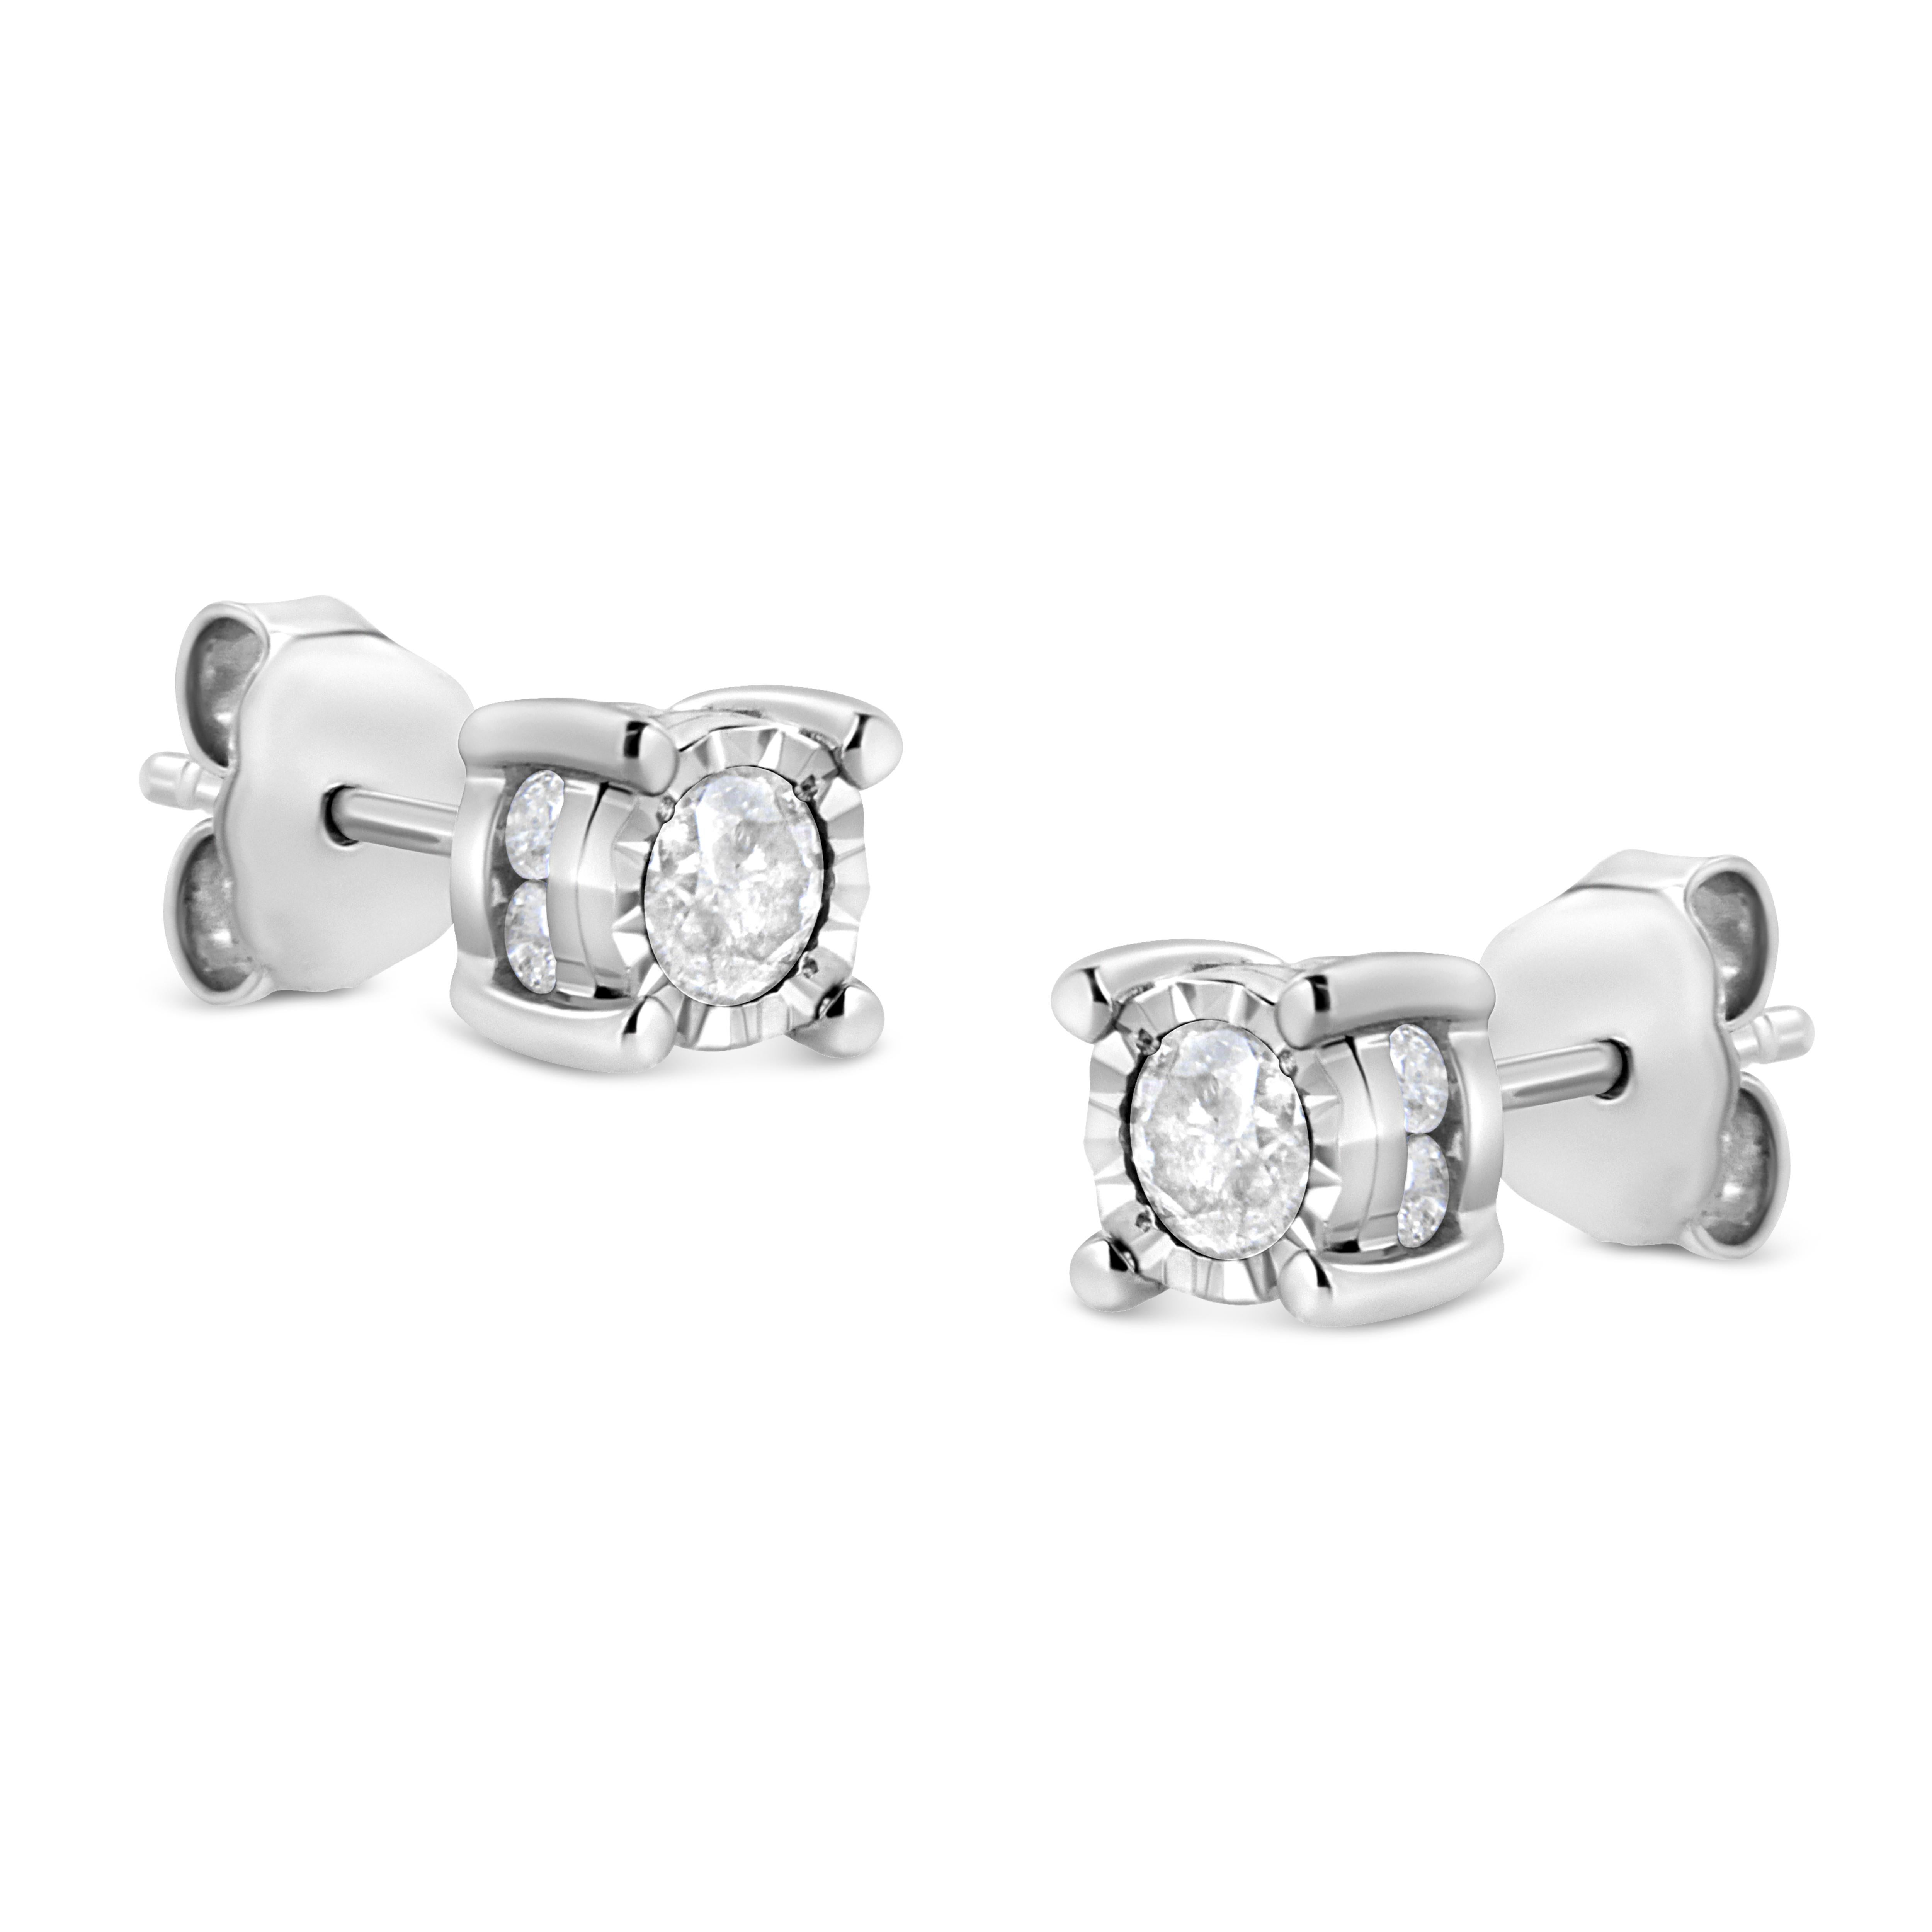 1 carat diamond stud earrings in sterling silver